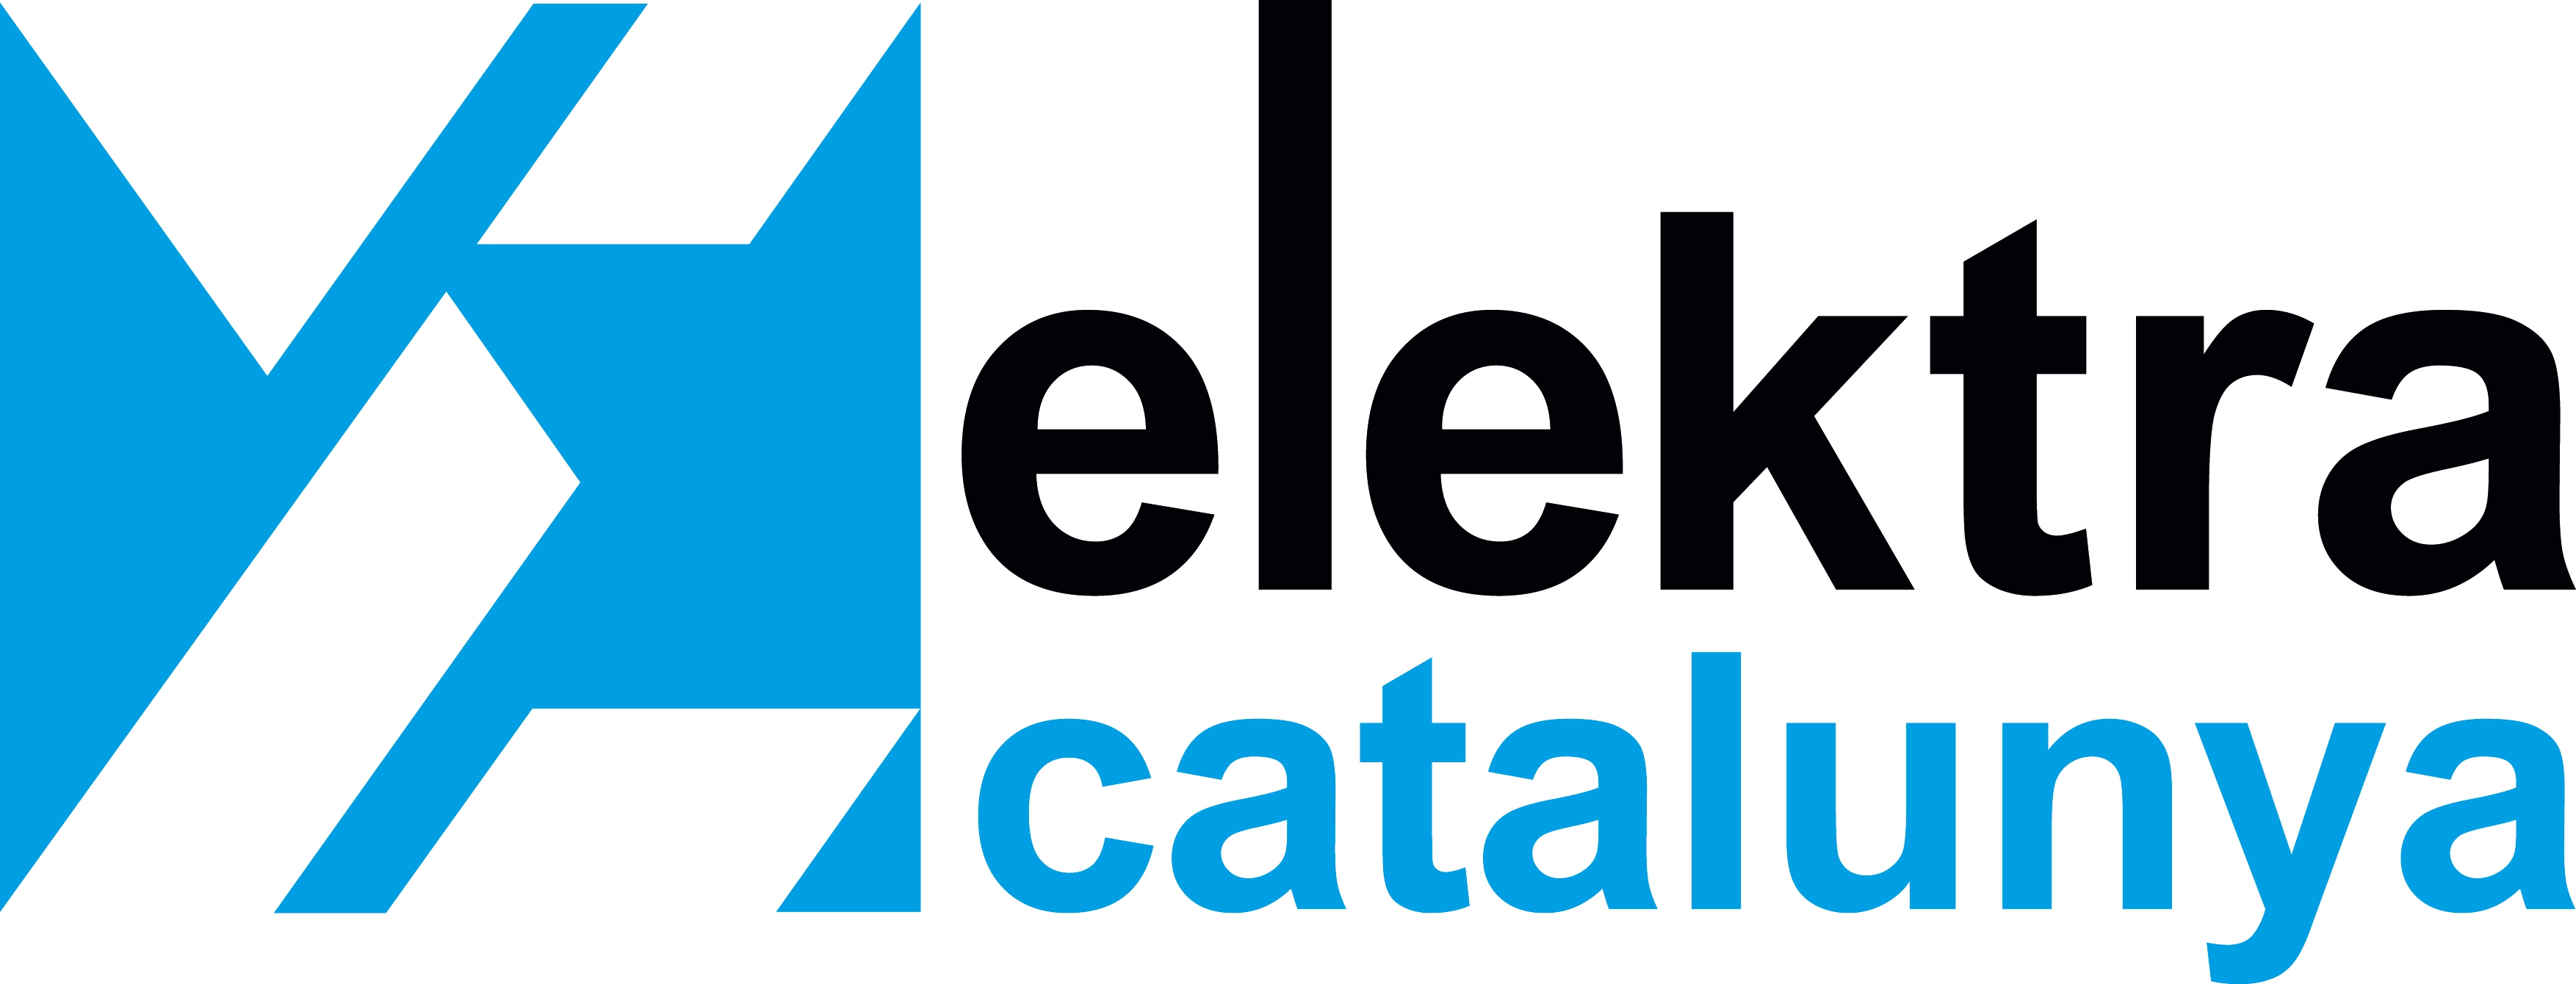 <!--:es-->Los técnicos especialistas en eficiencia energética de Elektra Catalunya llevarán a cabo una auditoría energética global de las instalaciones de la antigua Lavandera en Sant Adrià del Besòs (Barcelona)<!--:-->